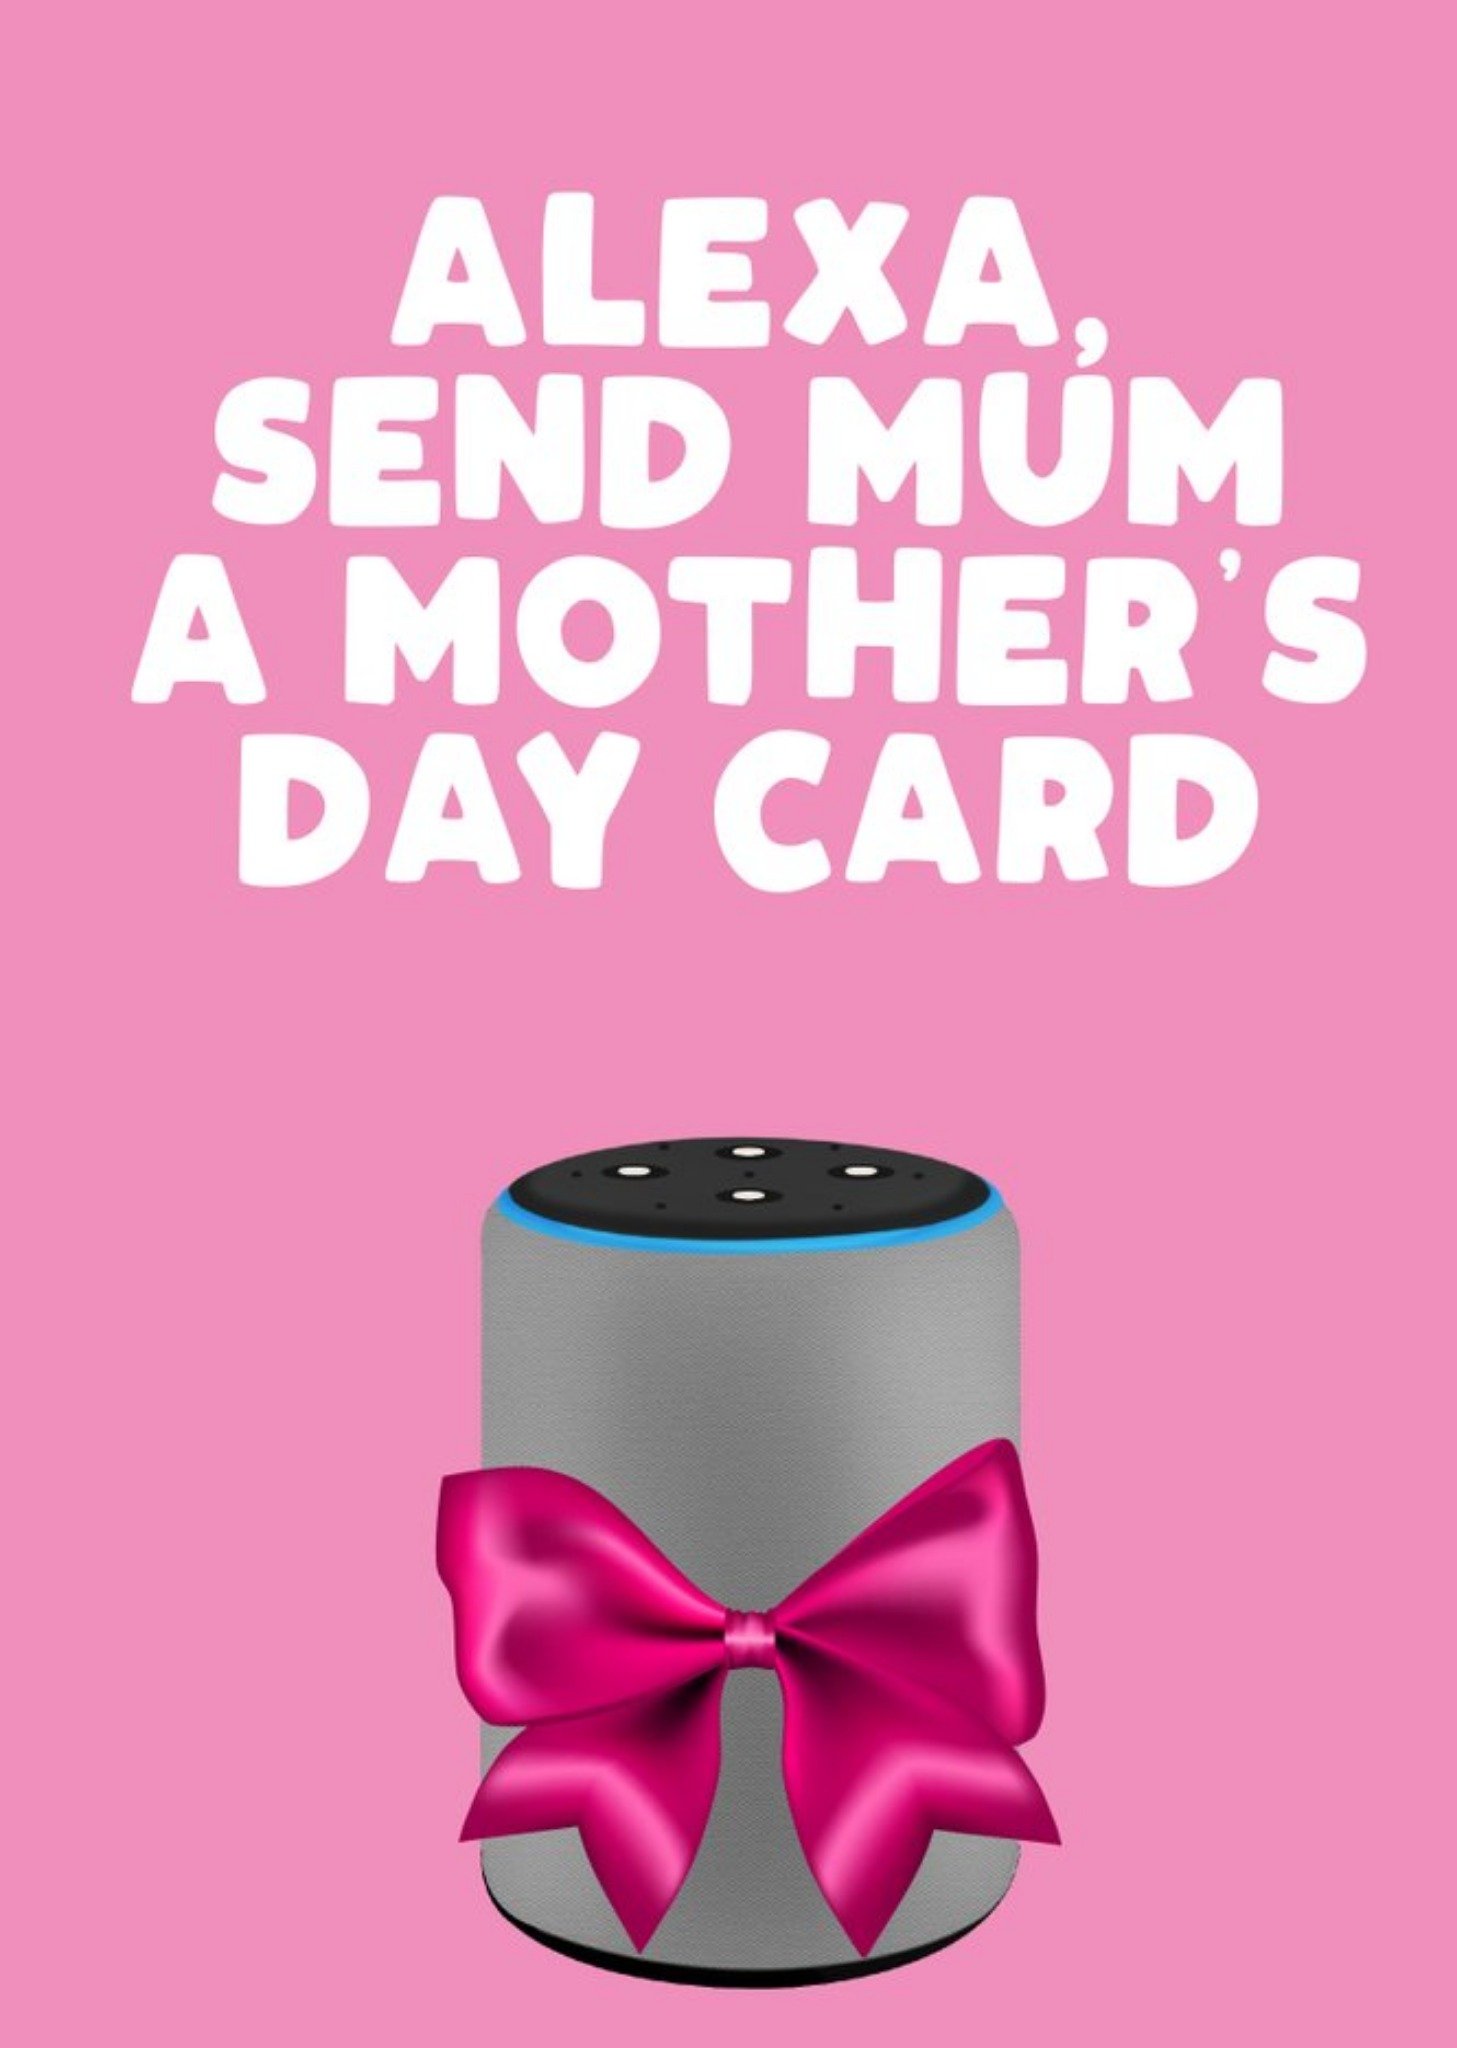 Alexa Send Mum A Mothers Day Card Ecard